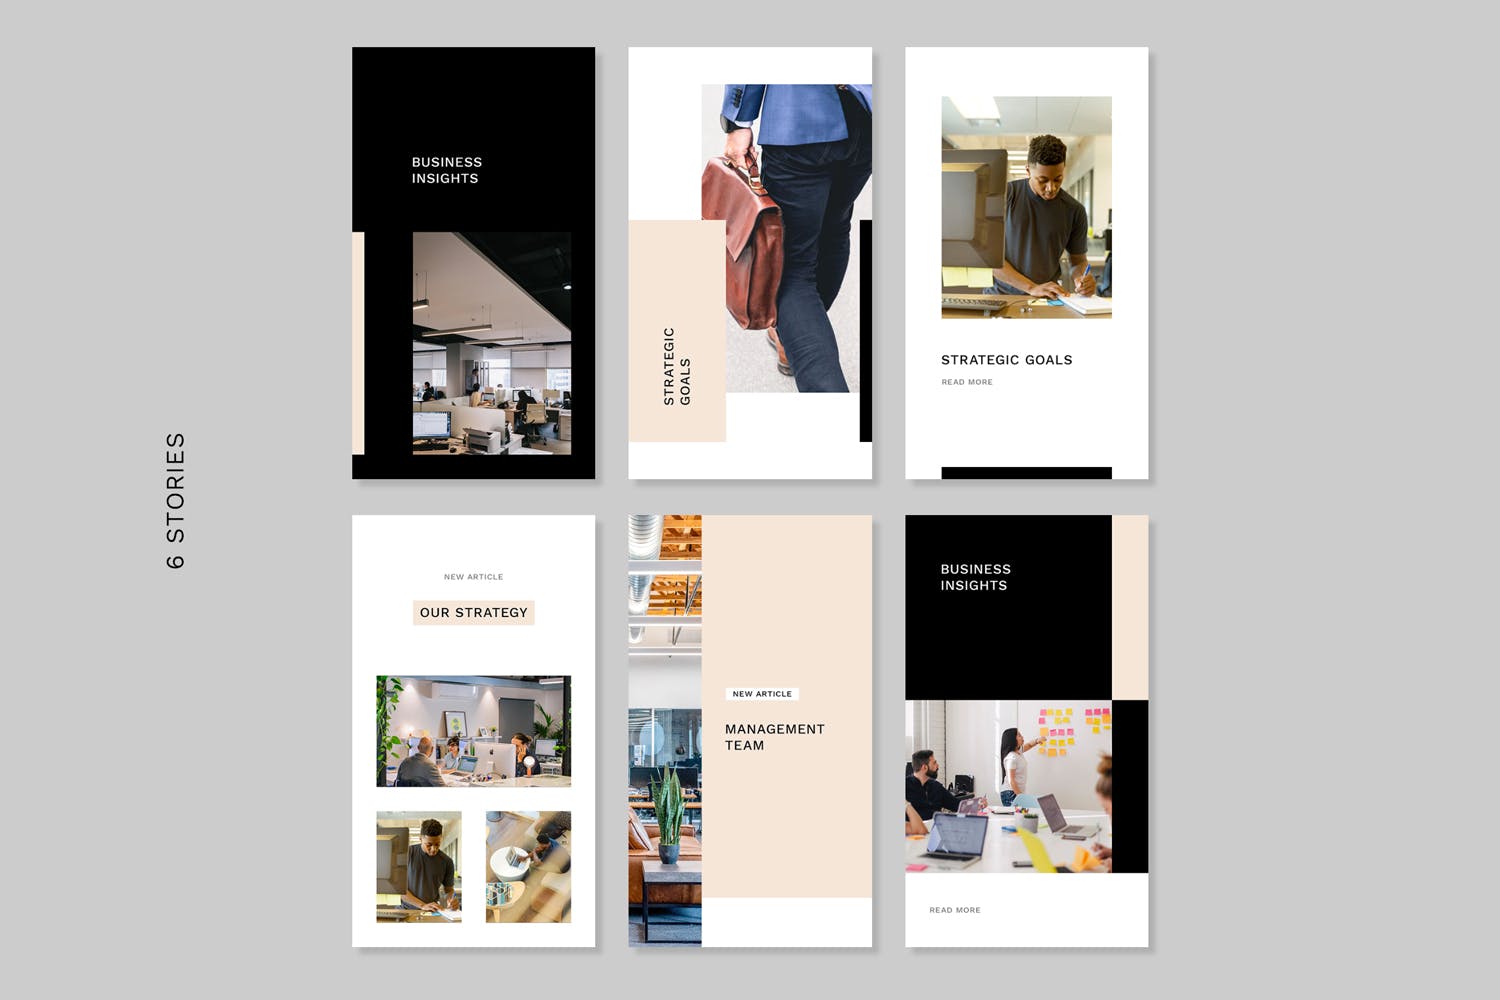 企业品牌故事营销Instagram设计素材包v49 Instagram Stories Kit (Vol.49)插图(1)